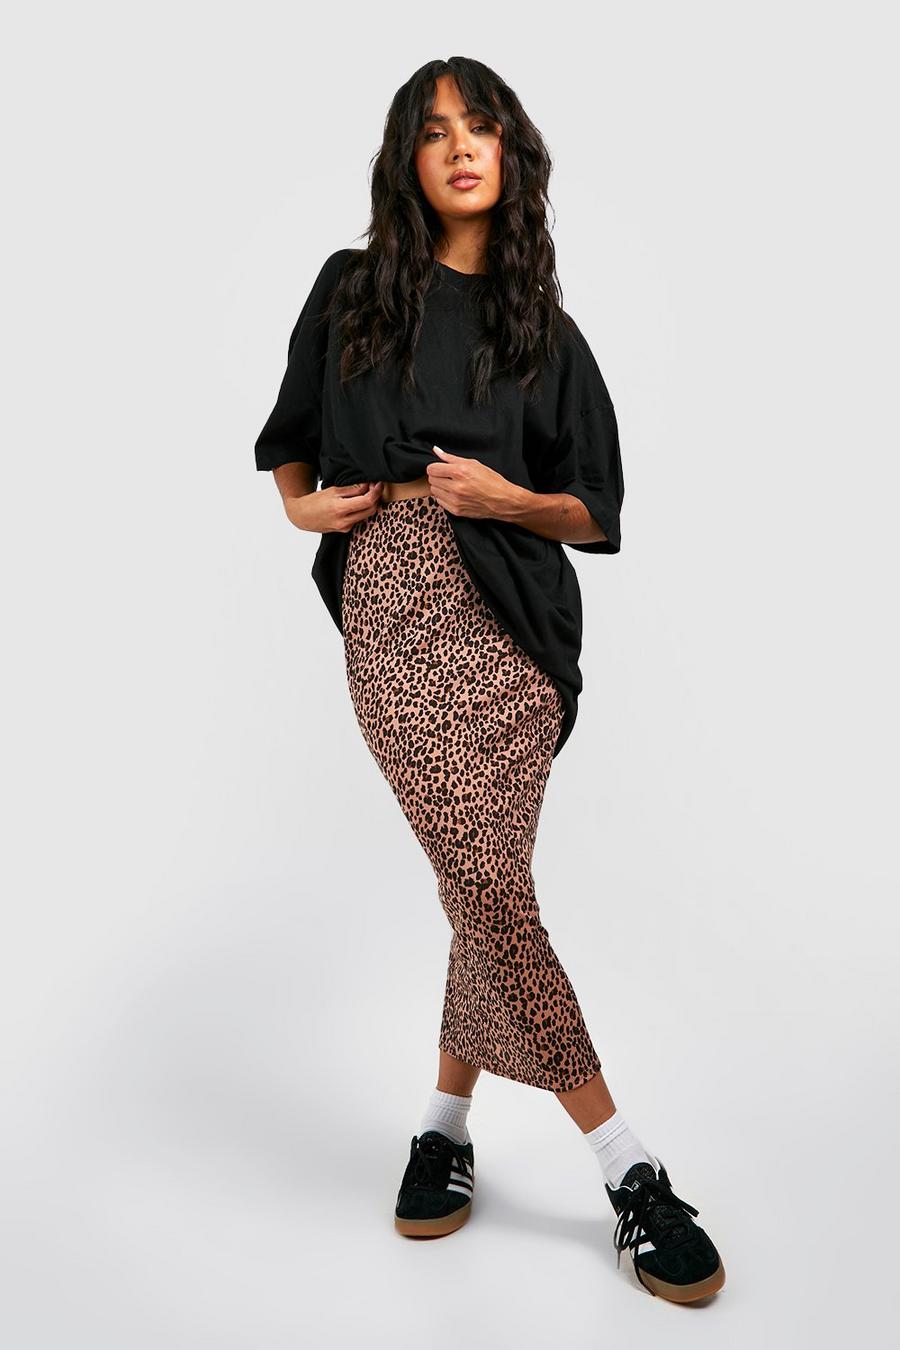 Leopard Print, Leopard Print Trousers, Shoes, Tops